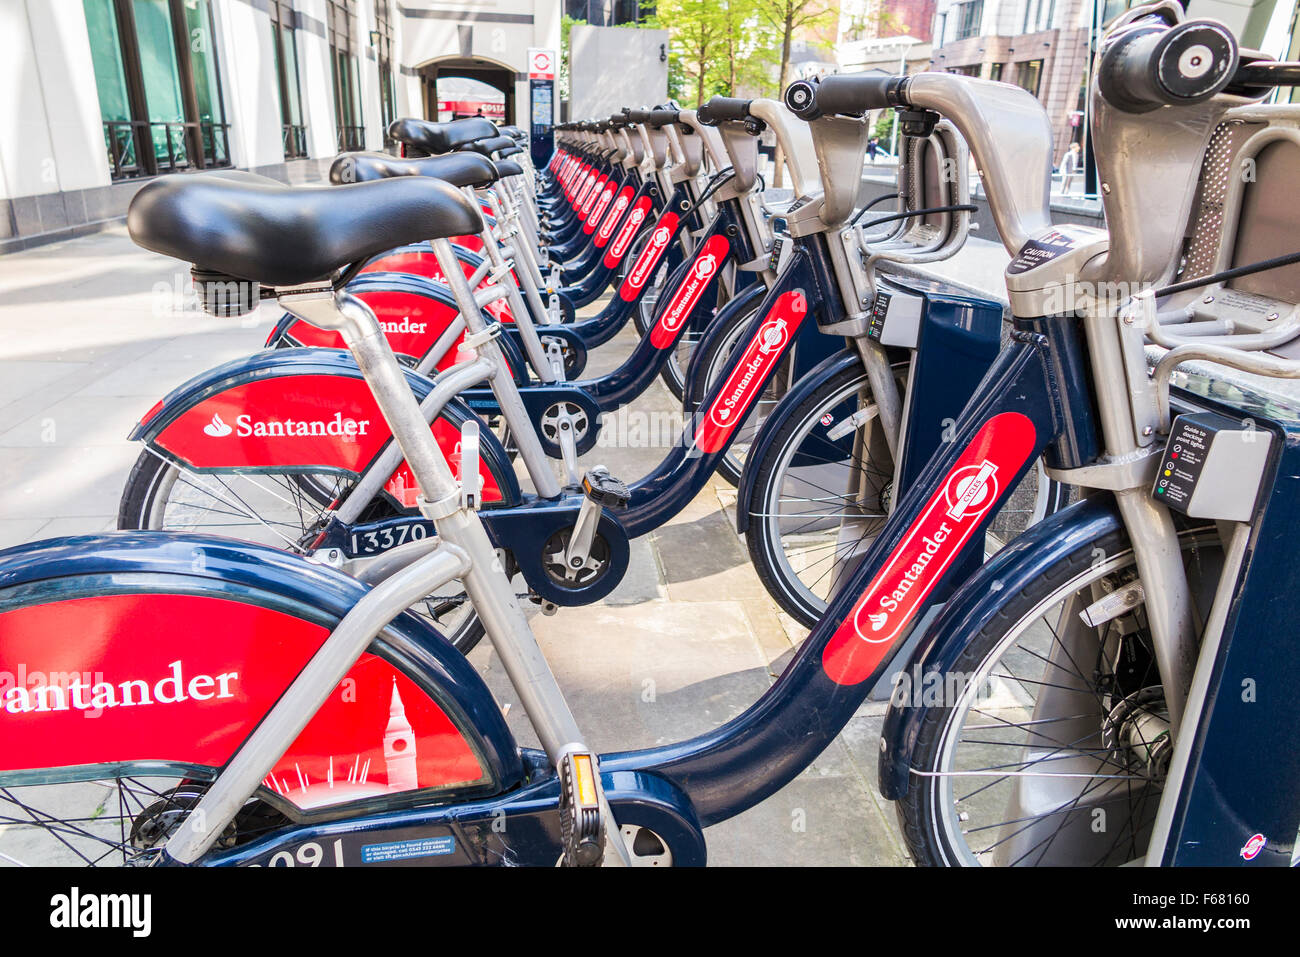 Boris bikes con la Rossa di Santander il logo di sponsorizzazione, parcheggiata in uno stand nella città di Londra - Inghilterra Foto Stock